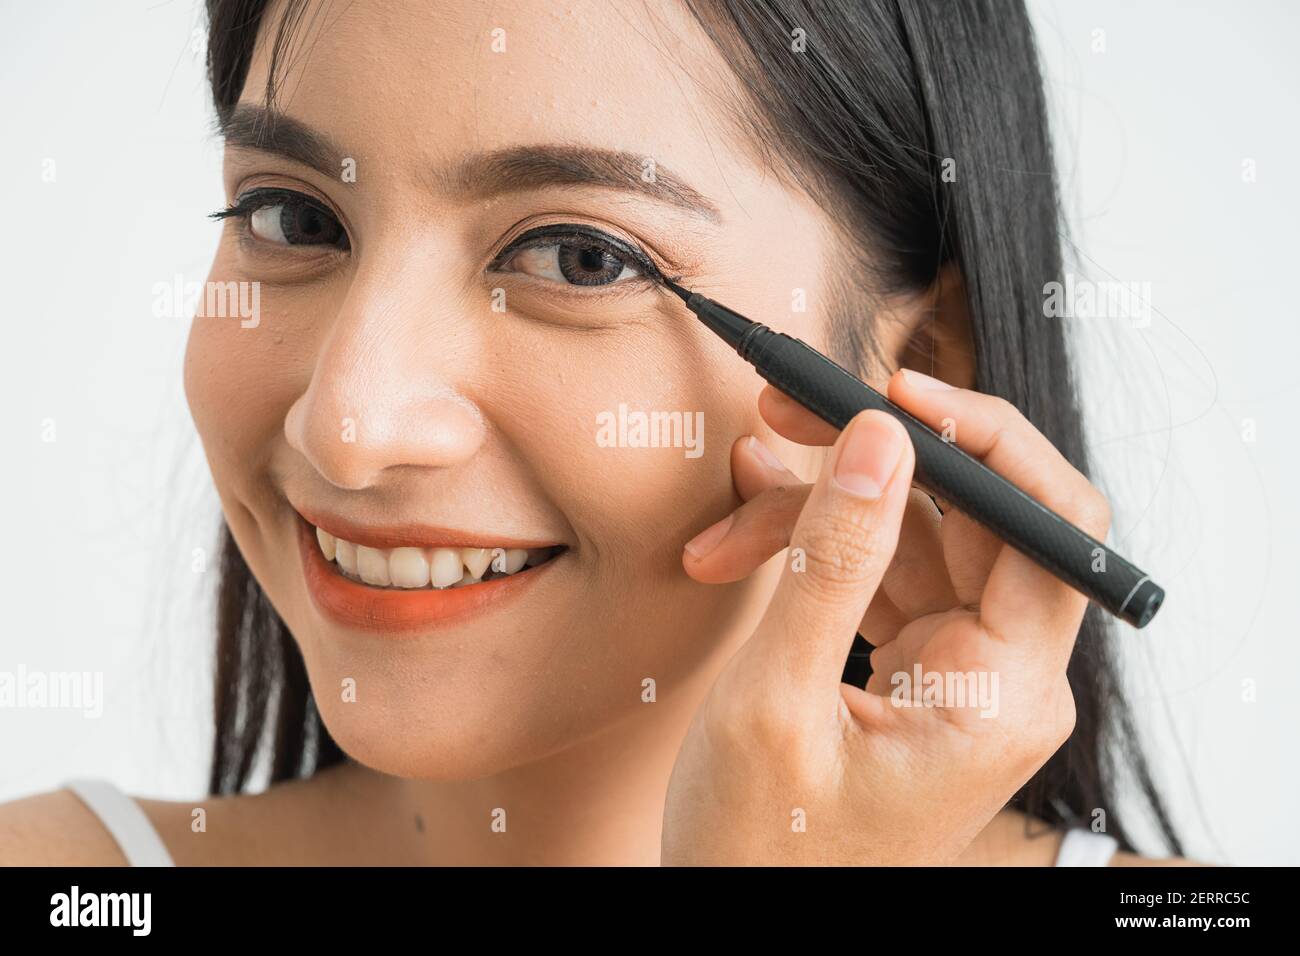 Gemischte Rasse asiatische Frau setzen Augenliner auf Augenlid auf Weißer Hintergrund Stockfoto